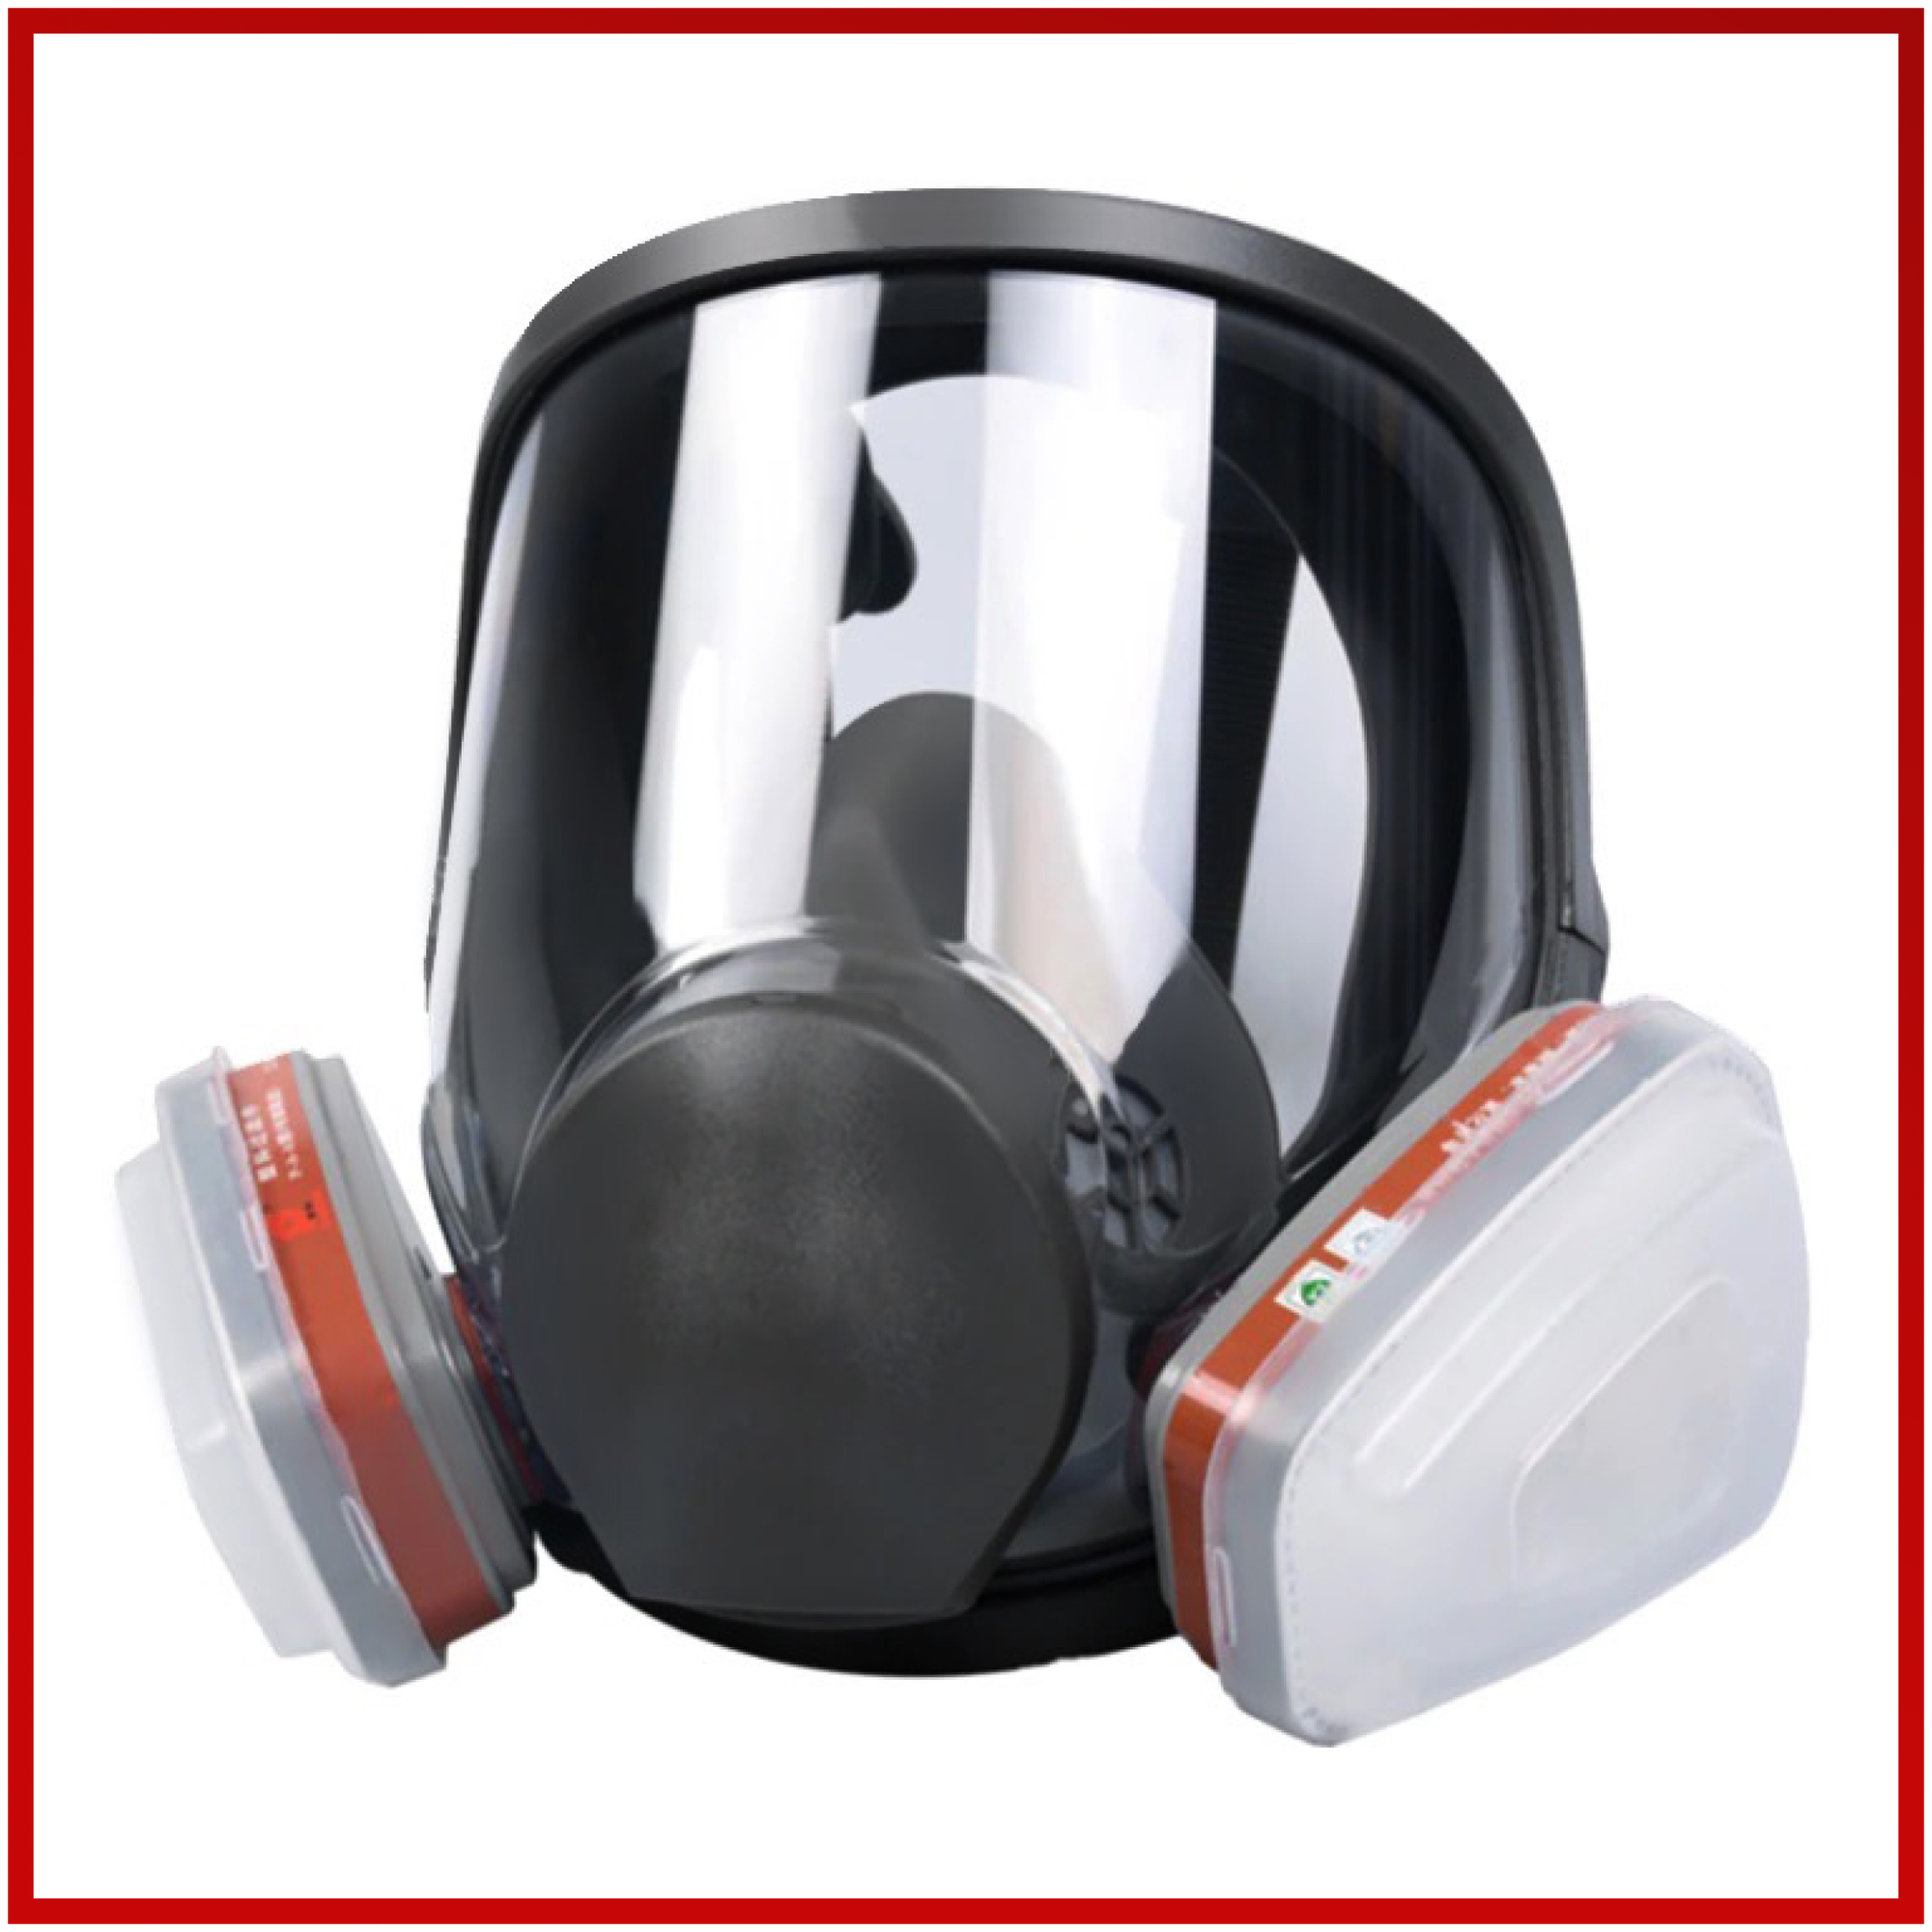 Профессиональный респиратор противогаз маска защитная 6800 замена 3М с угольным фильтром распиратор от краски пыли аллергии - фотография № 5